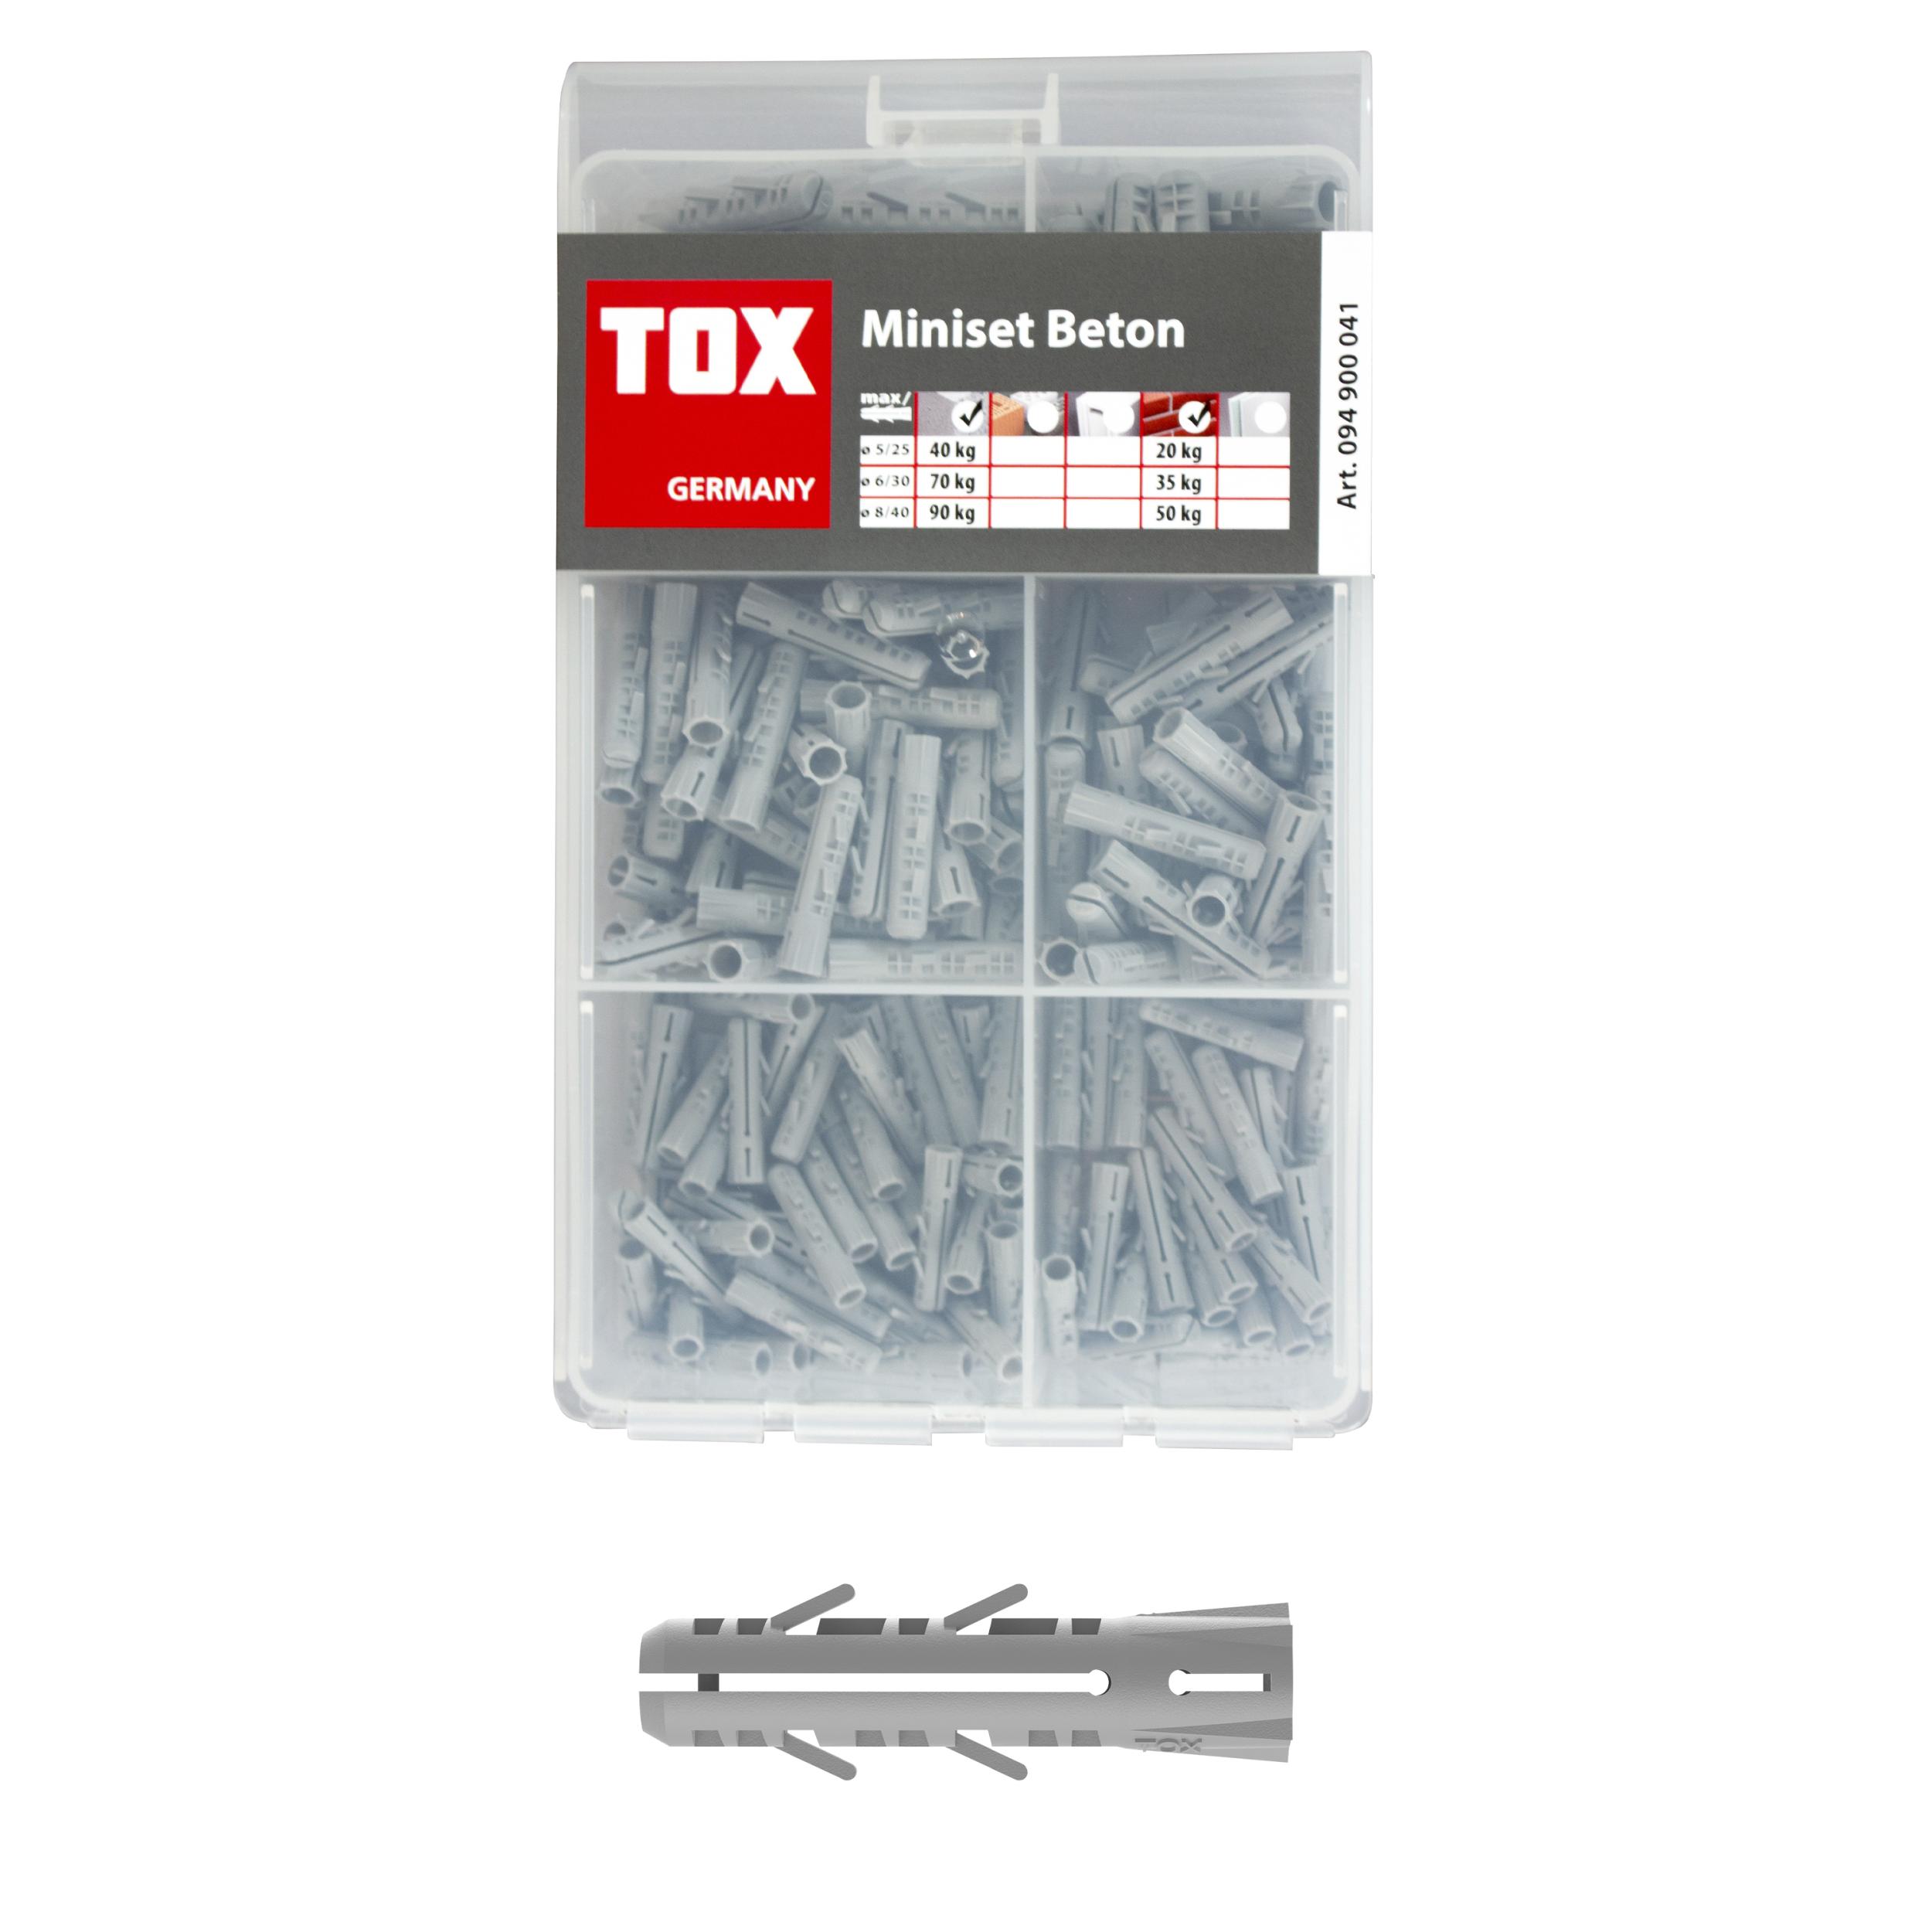 TOX Standard-Sortiment Miniset Beton 245 teilig